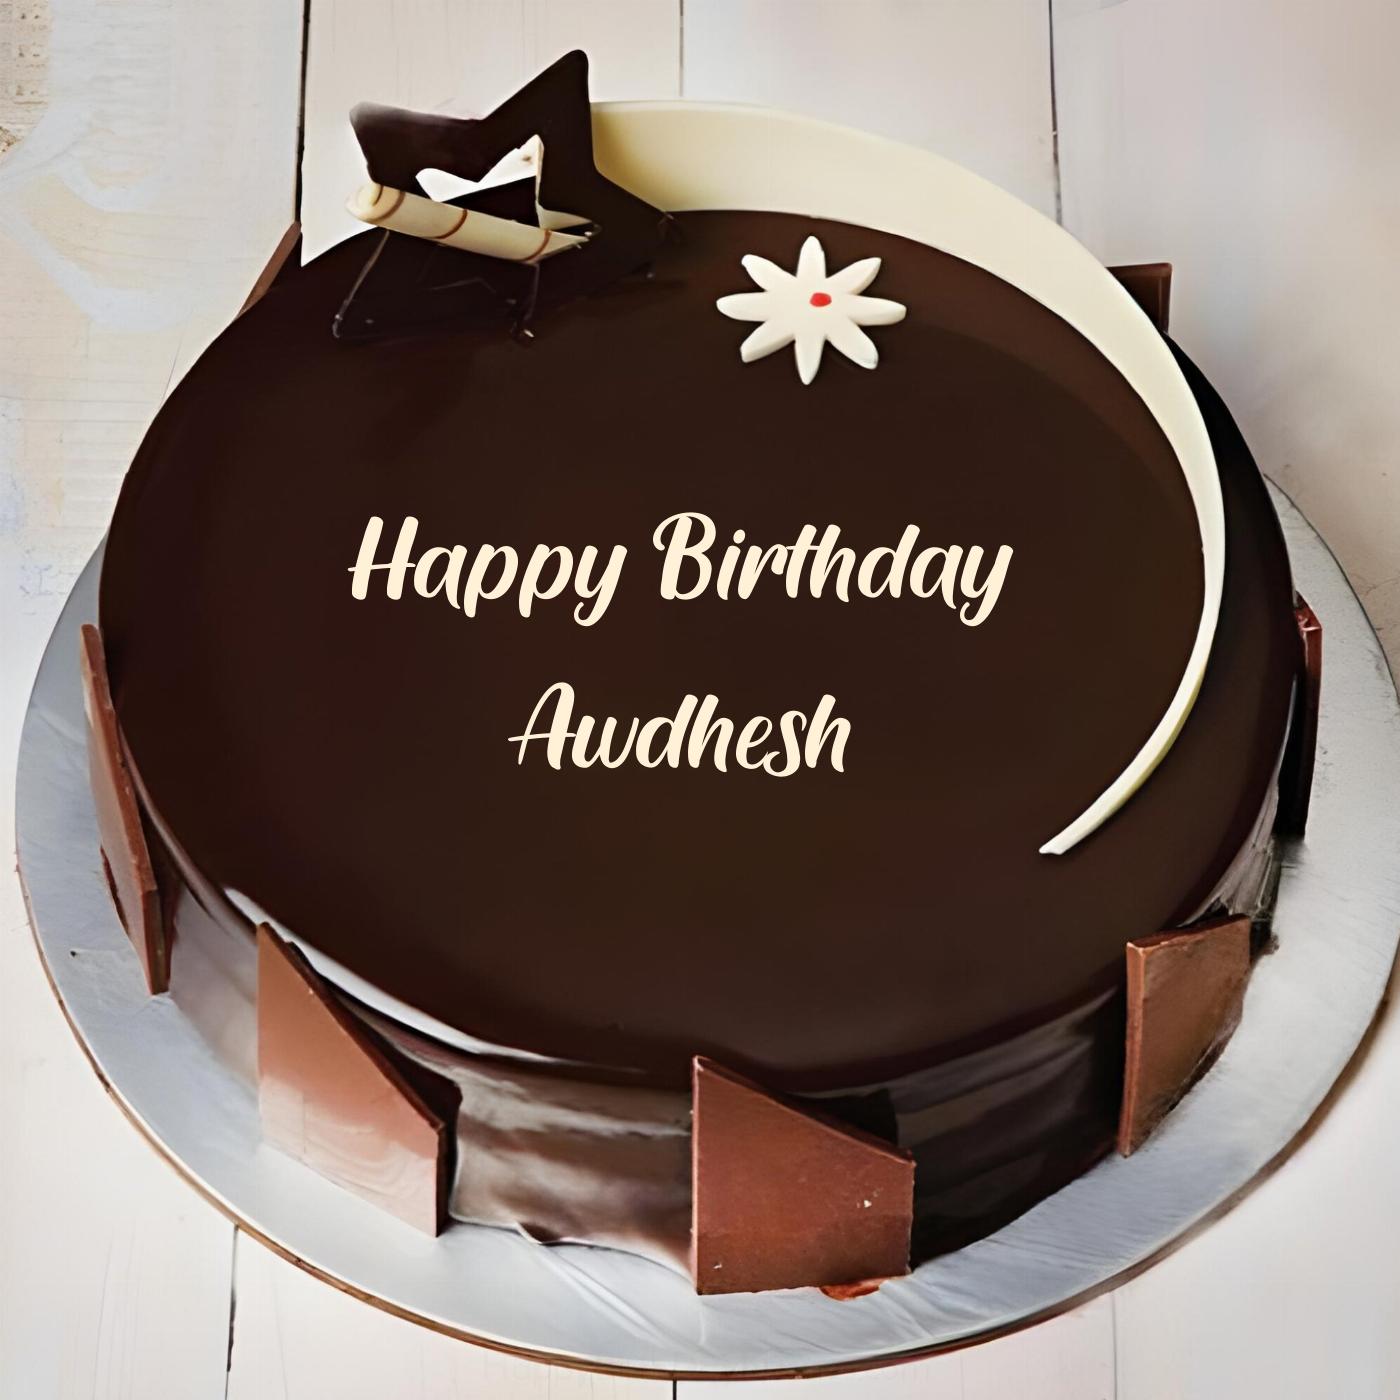 Happy Birthday Awdhesh Chocolate Star Cake